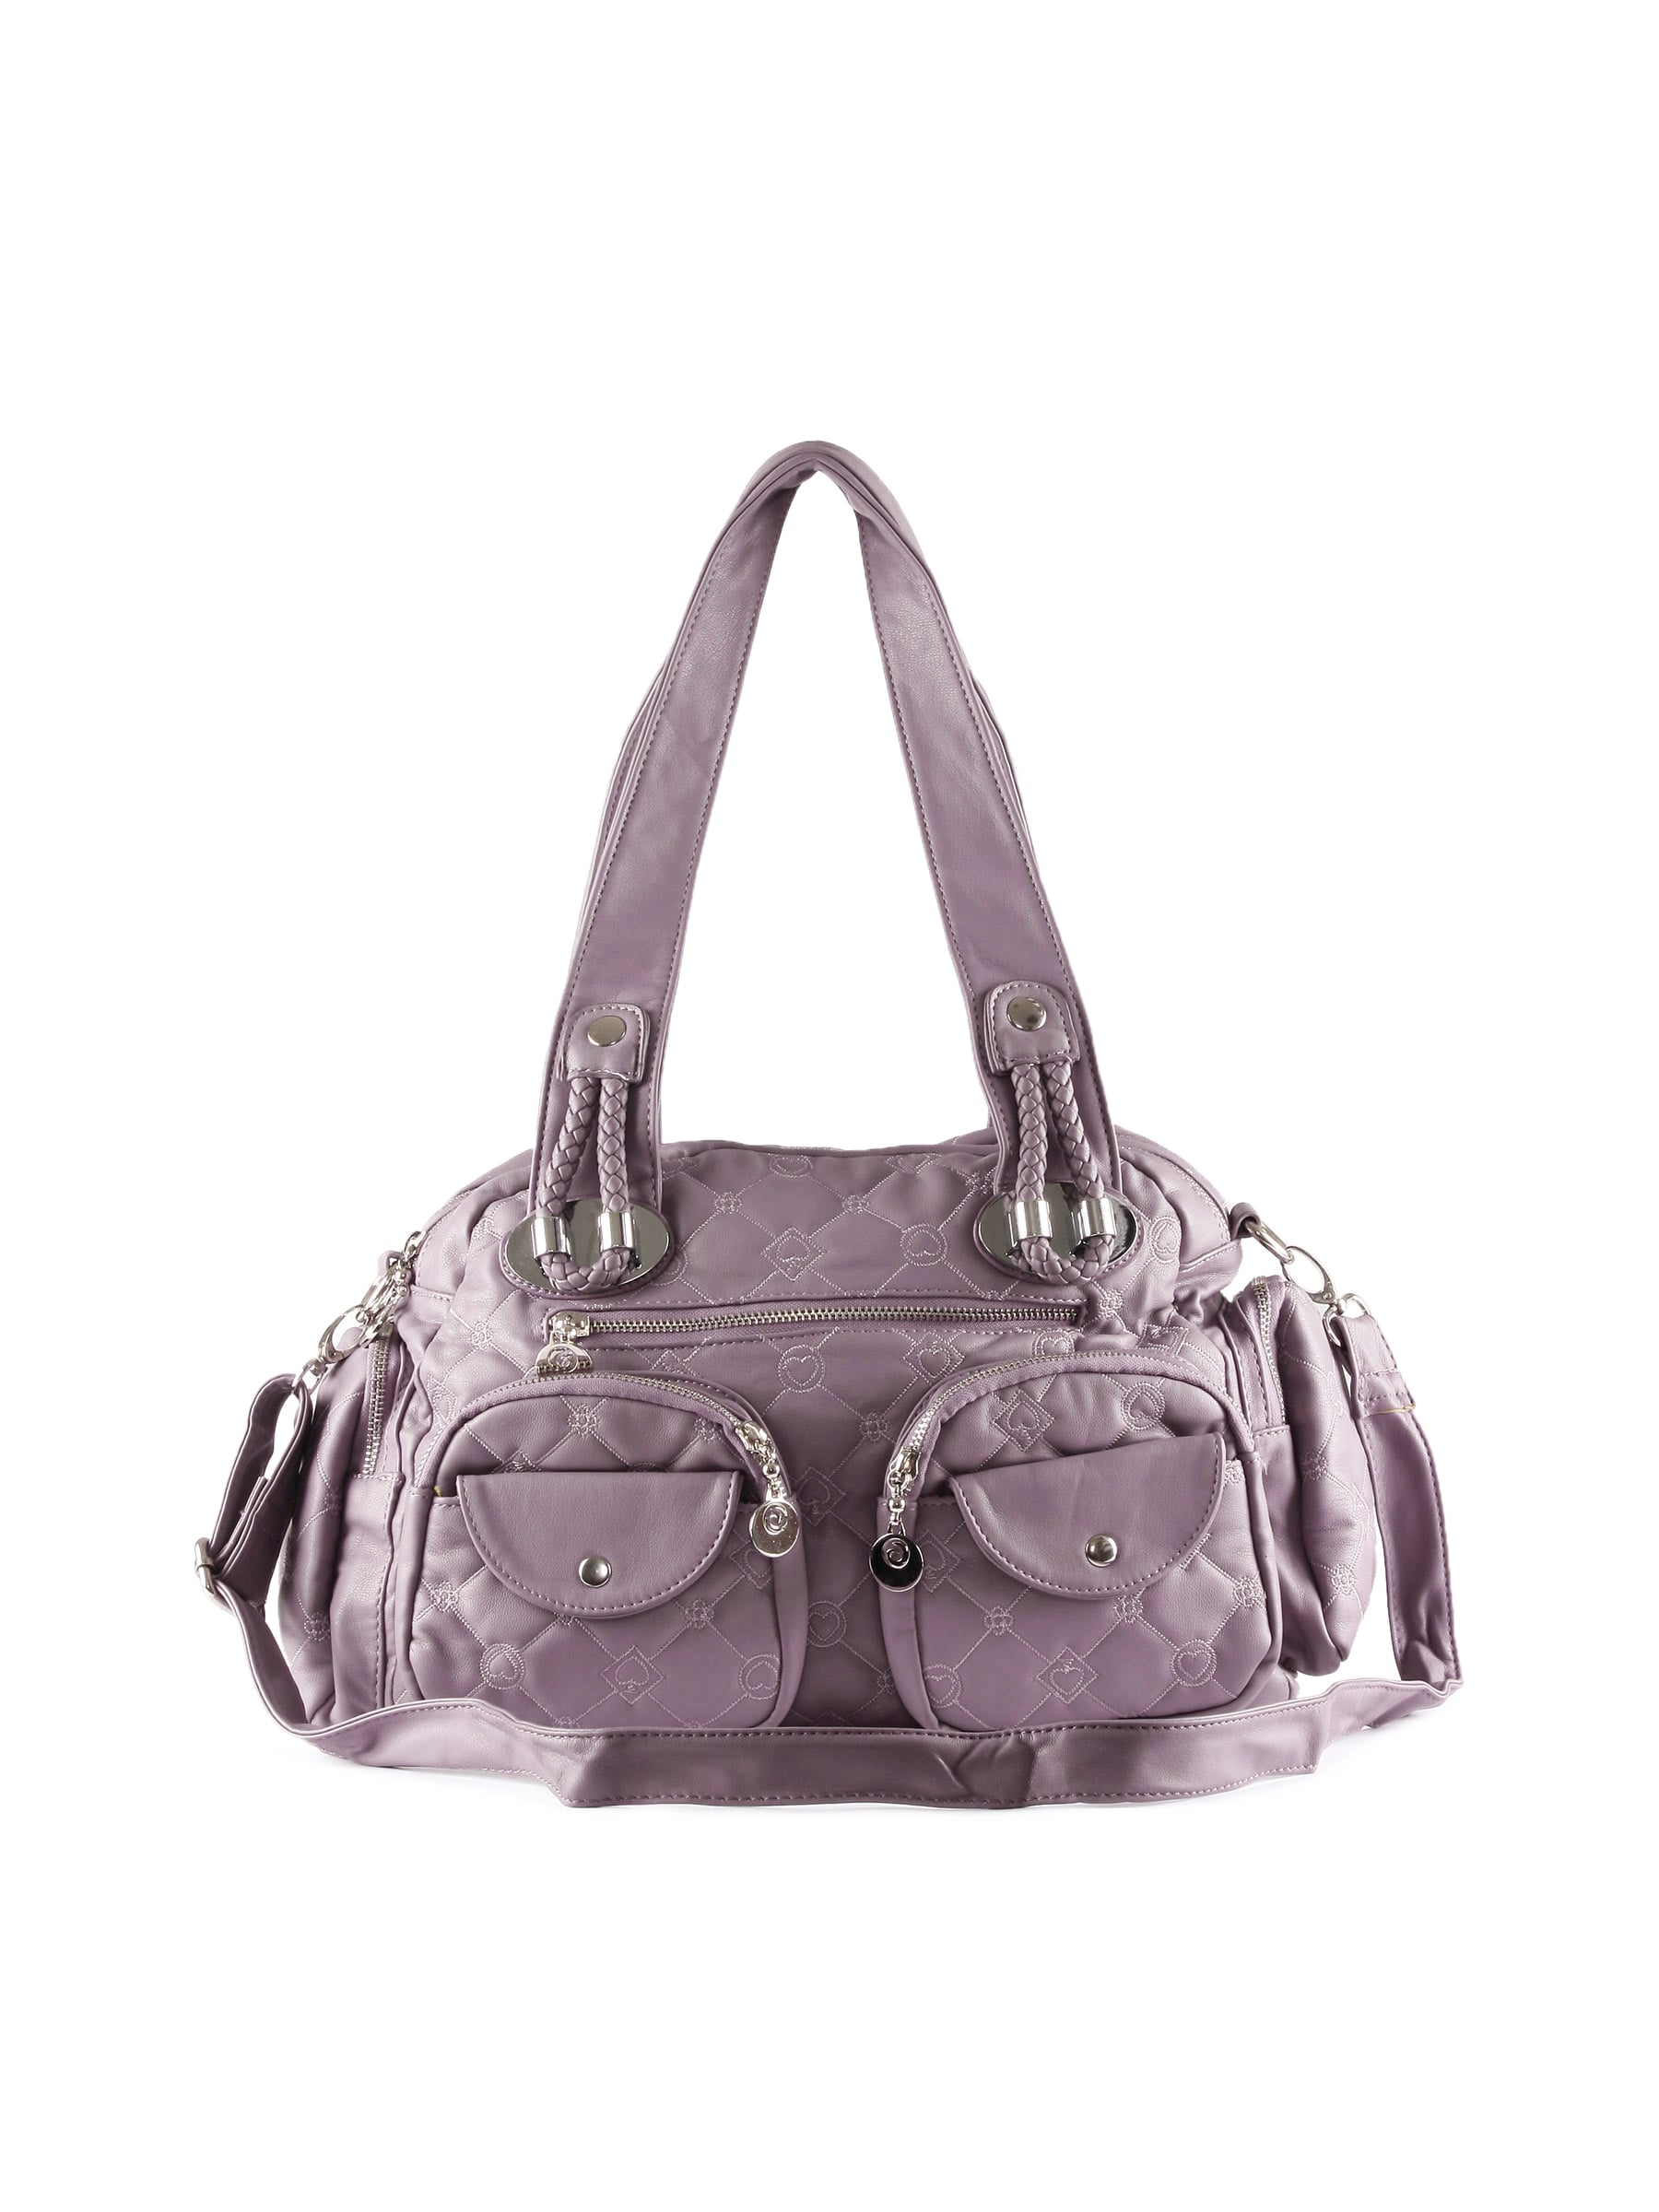 Kiara Women Small Pocket Purple Handbag